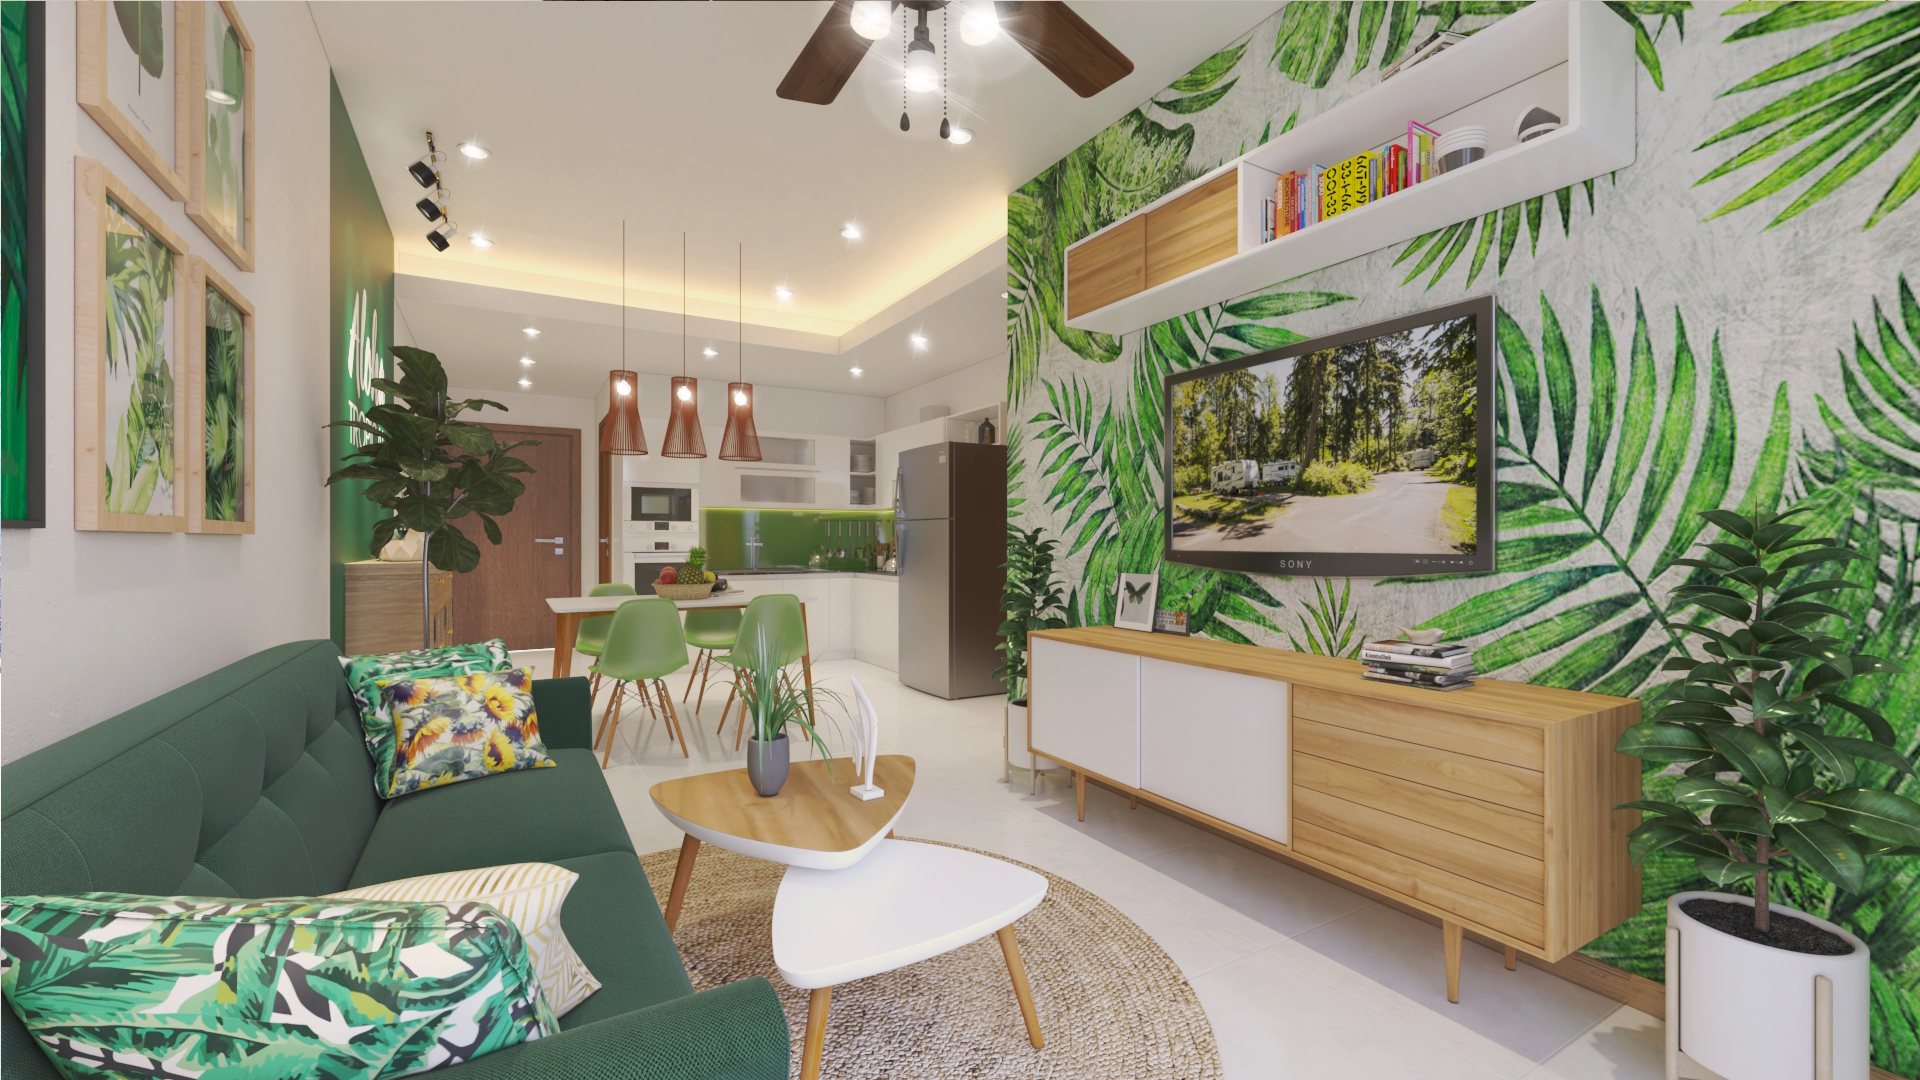 thiết kế nội thất chung cư tại Hồ Chí Minh  thiết kế căn hộ chung cư jamona city 0 1552464979